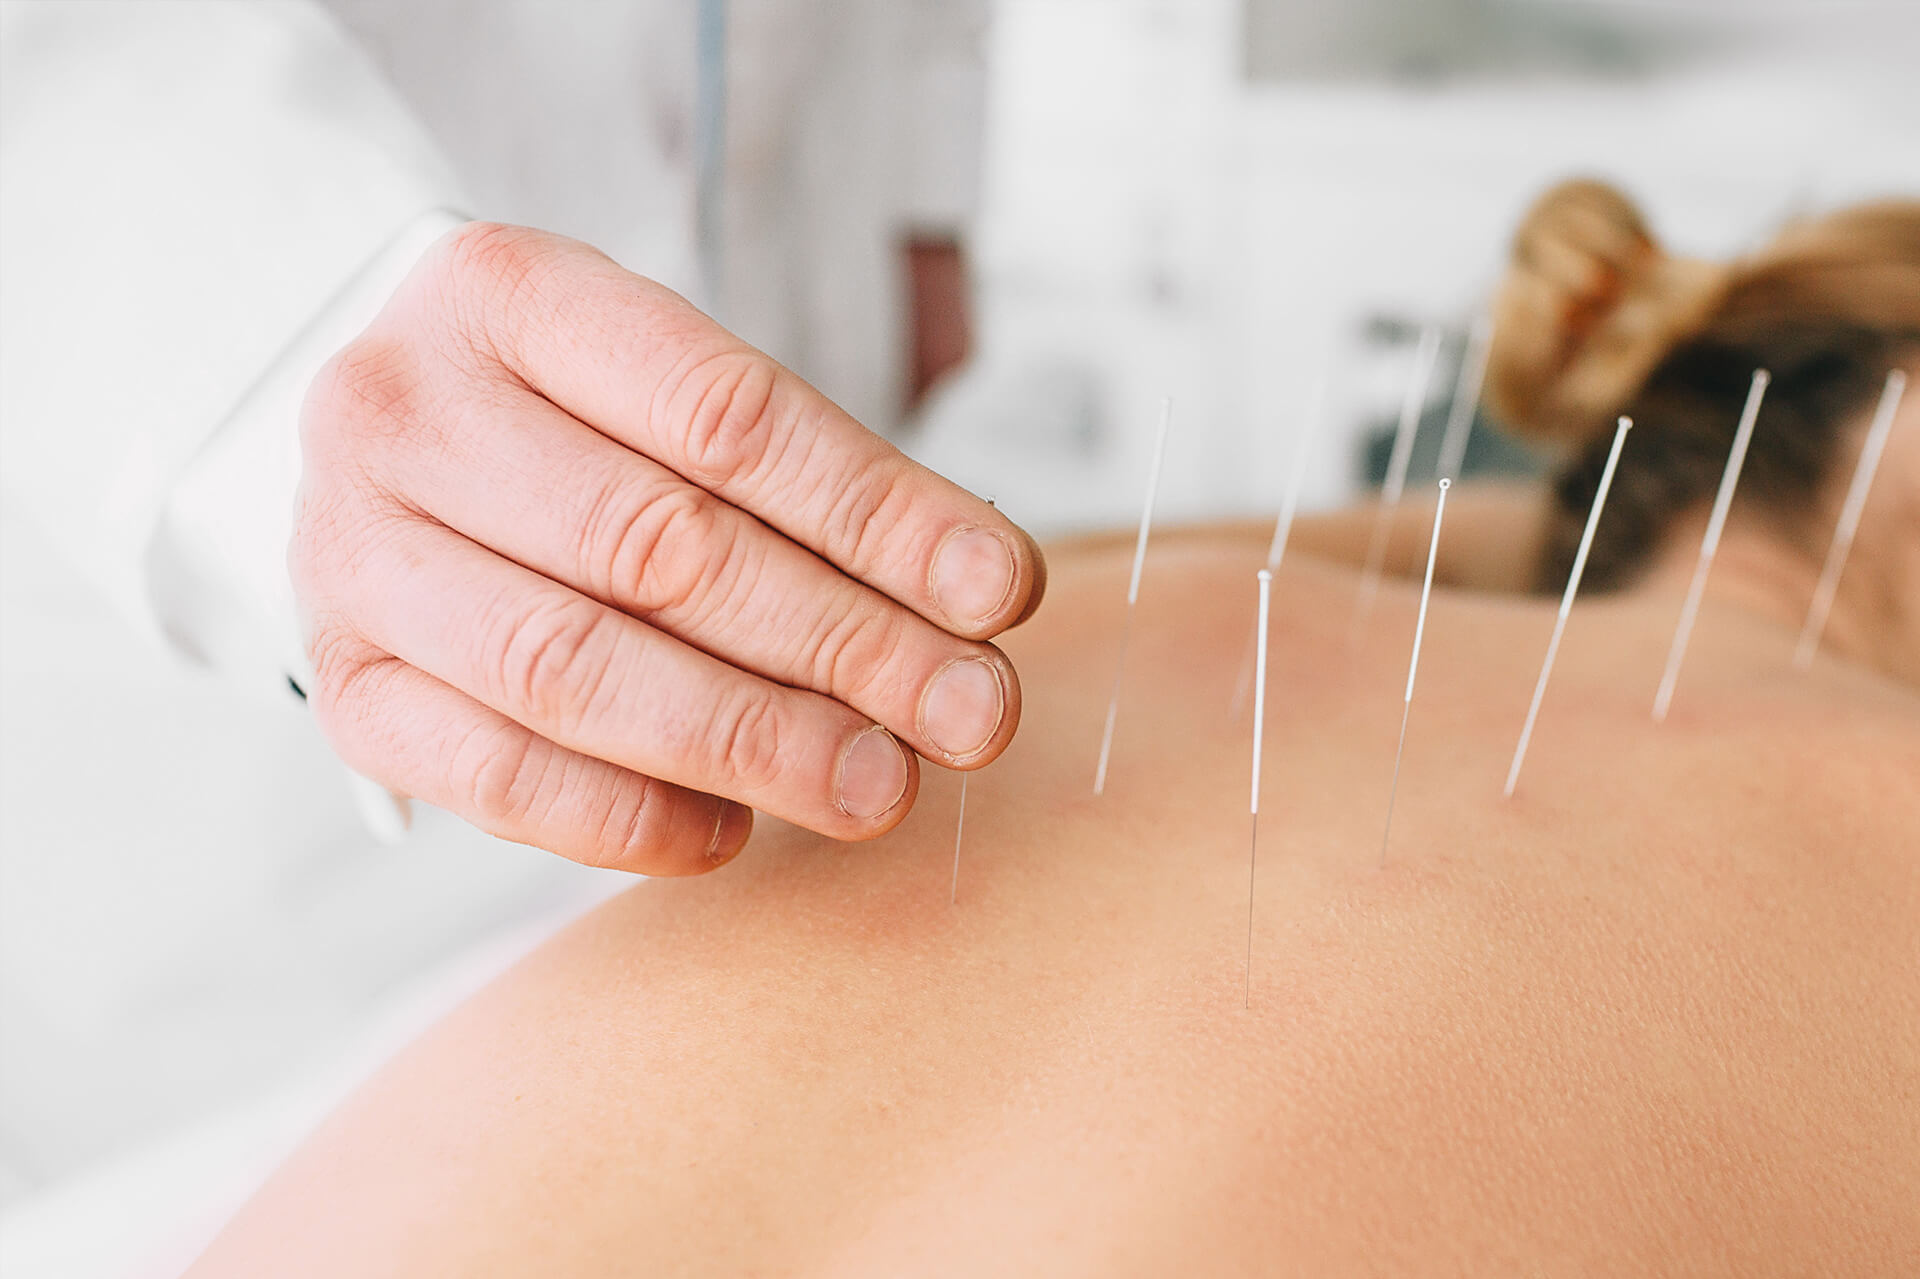 Hier sieht man mehrere Akupunkturnadeln, wie der Doktor gerade in einem Rücken einer jungen Dame rein steckt